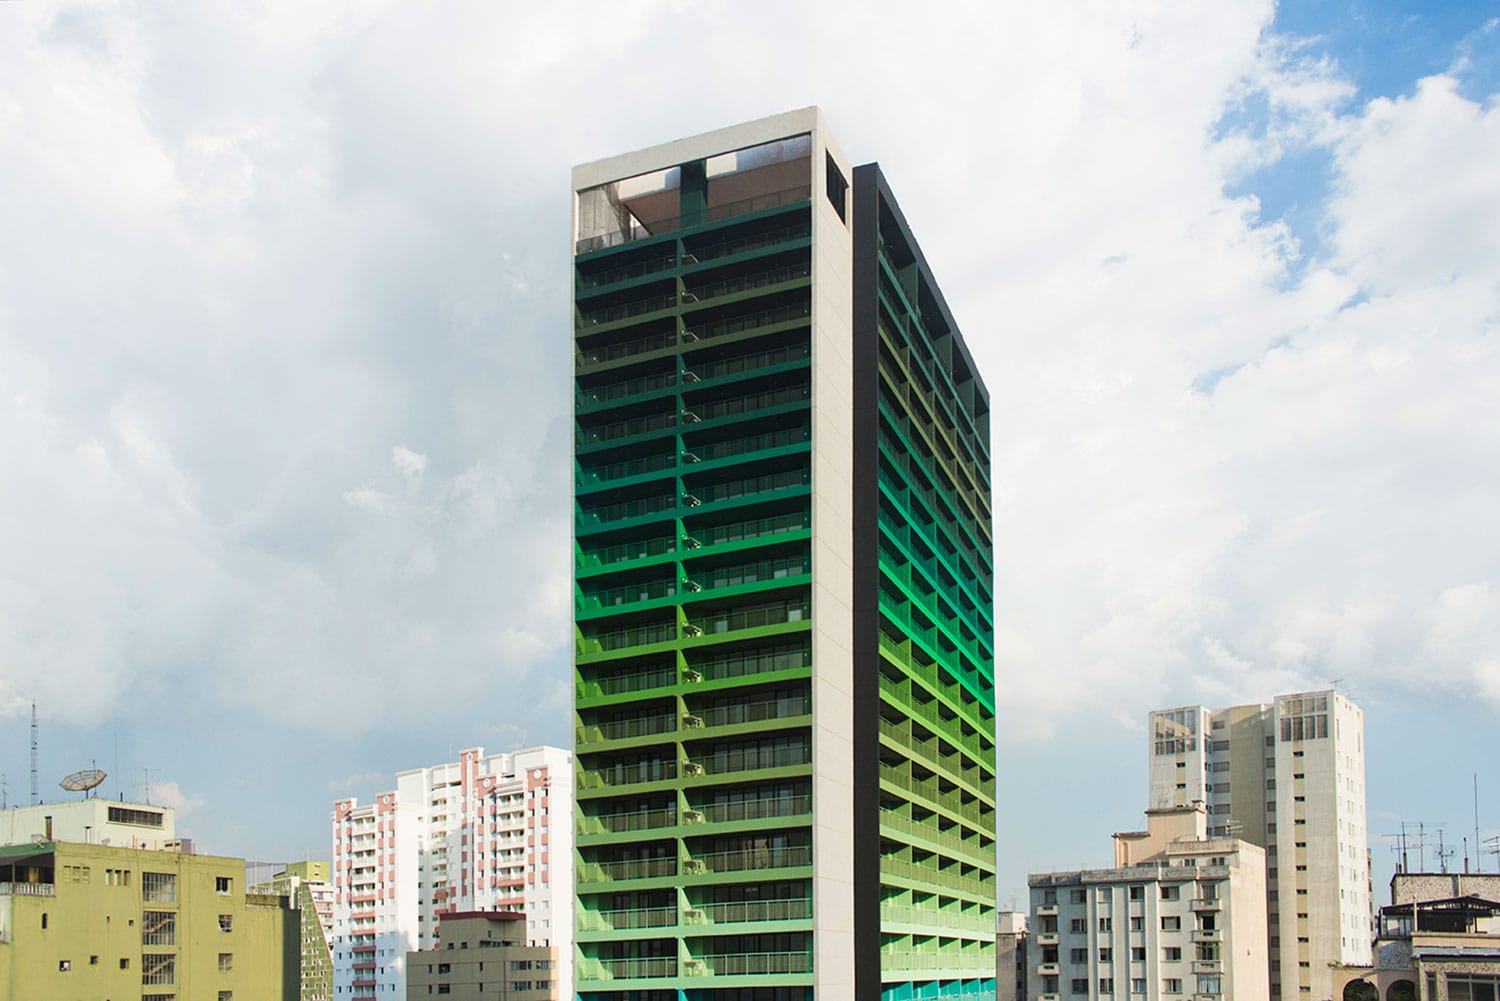 Edifício Brasil, projeto de arquitetura do escritório Rosenbaum em coautoria com Guto Requena